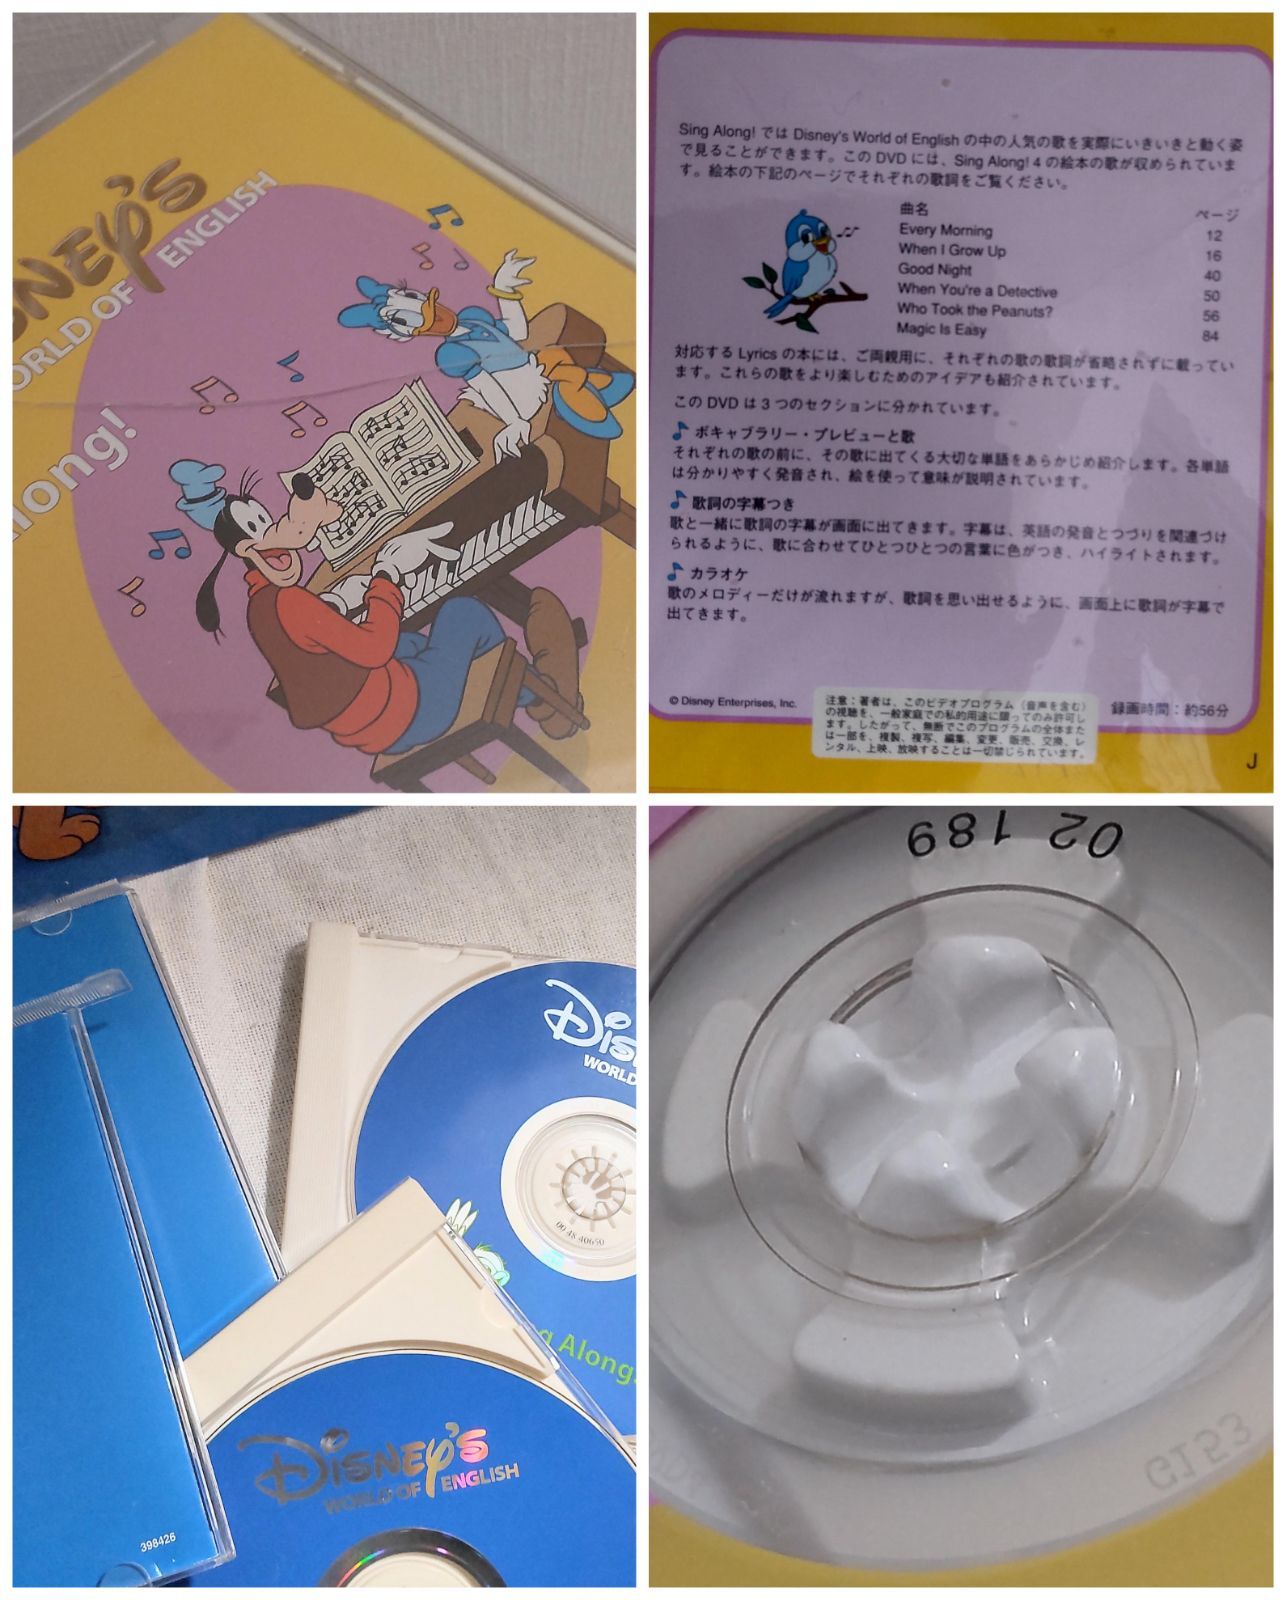 ディズニー英語システム シングアロング DVD CD 絵本 セット パペット付-